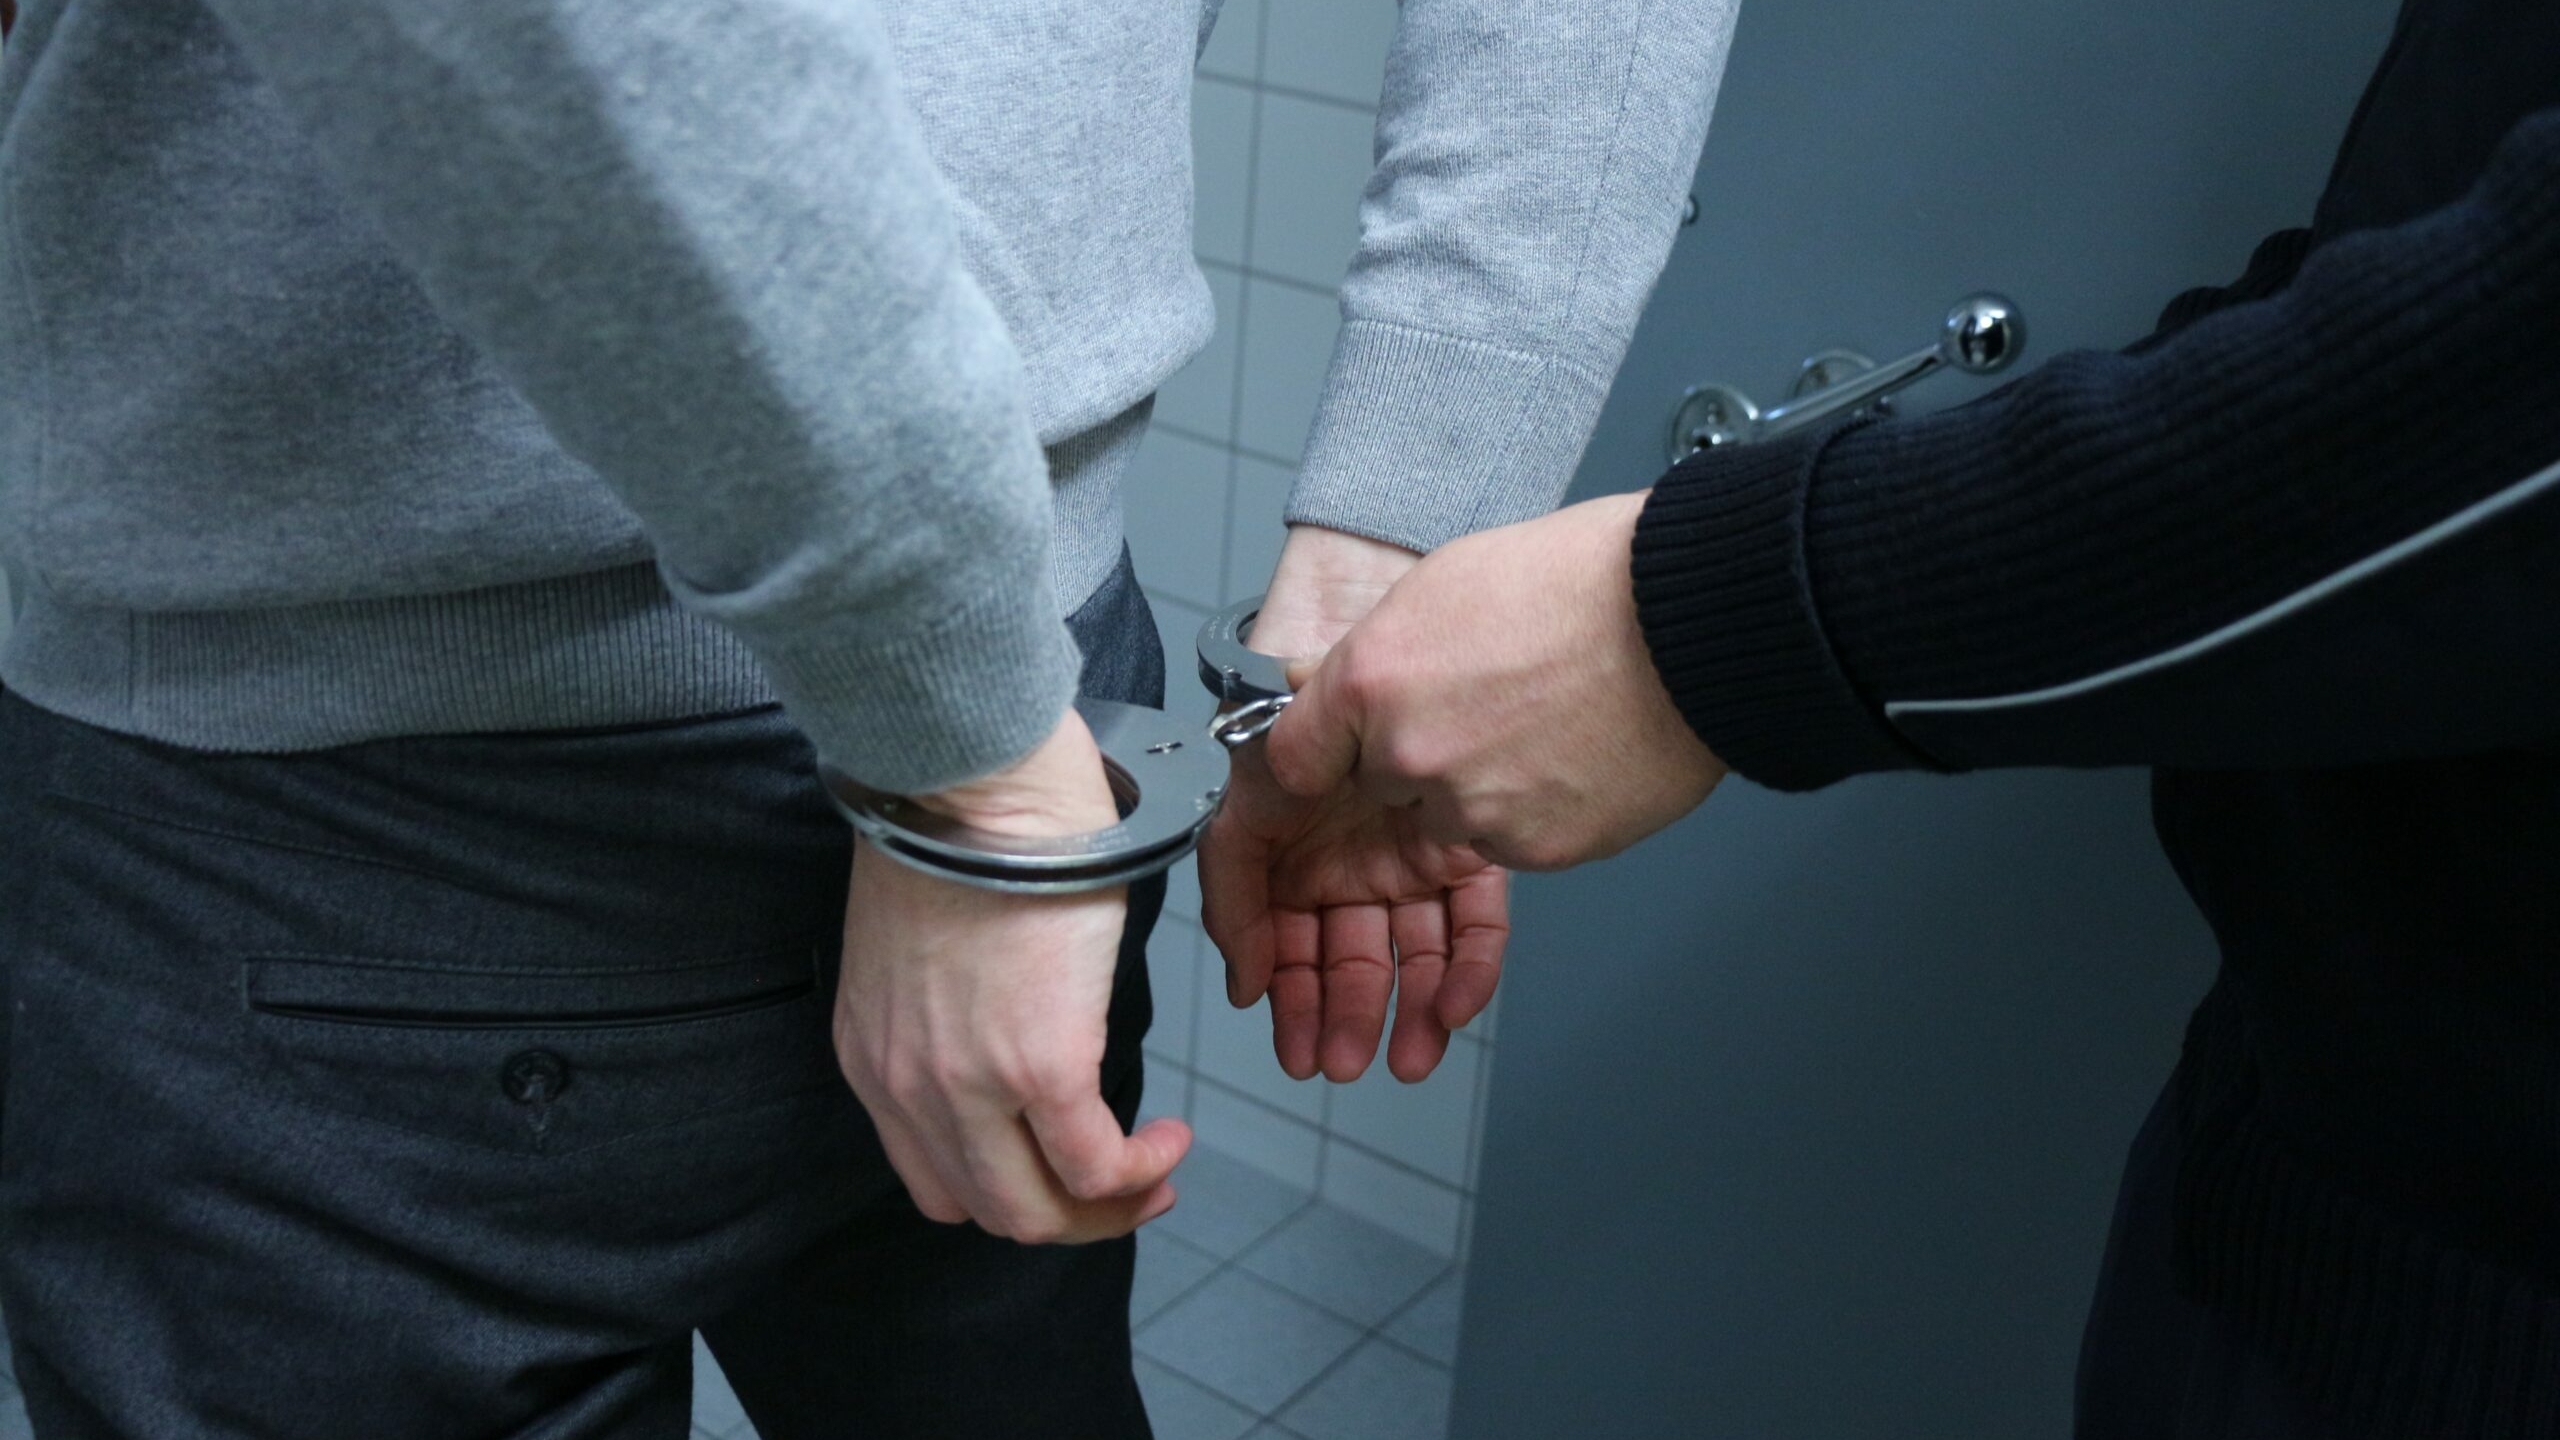 Секс с 13-летней петербурженкой обернулся для охранника и контролера задержанием